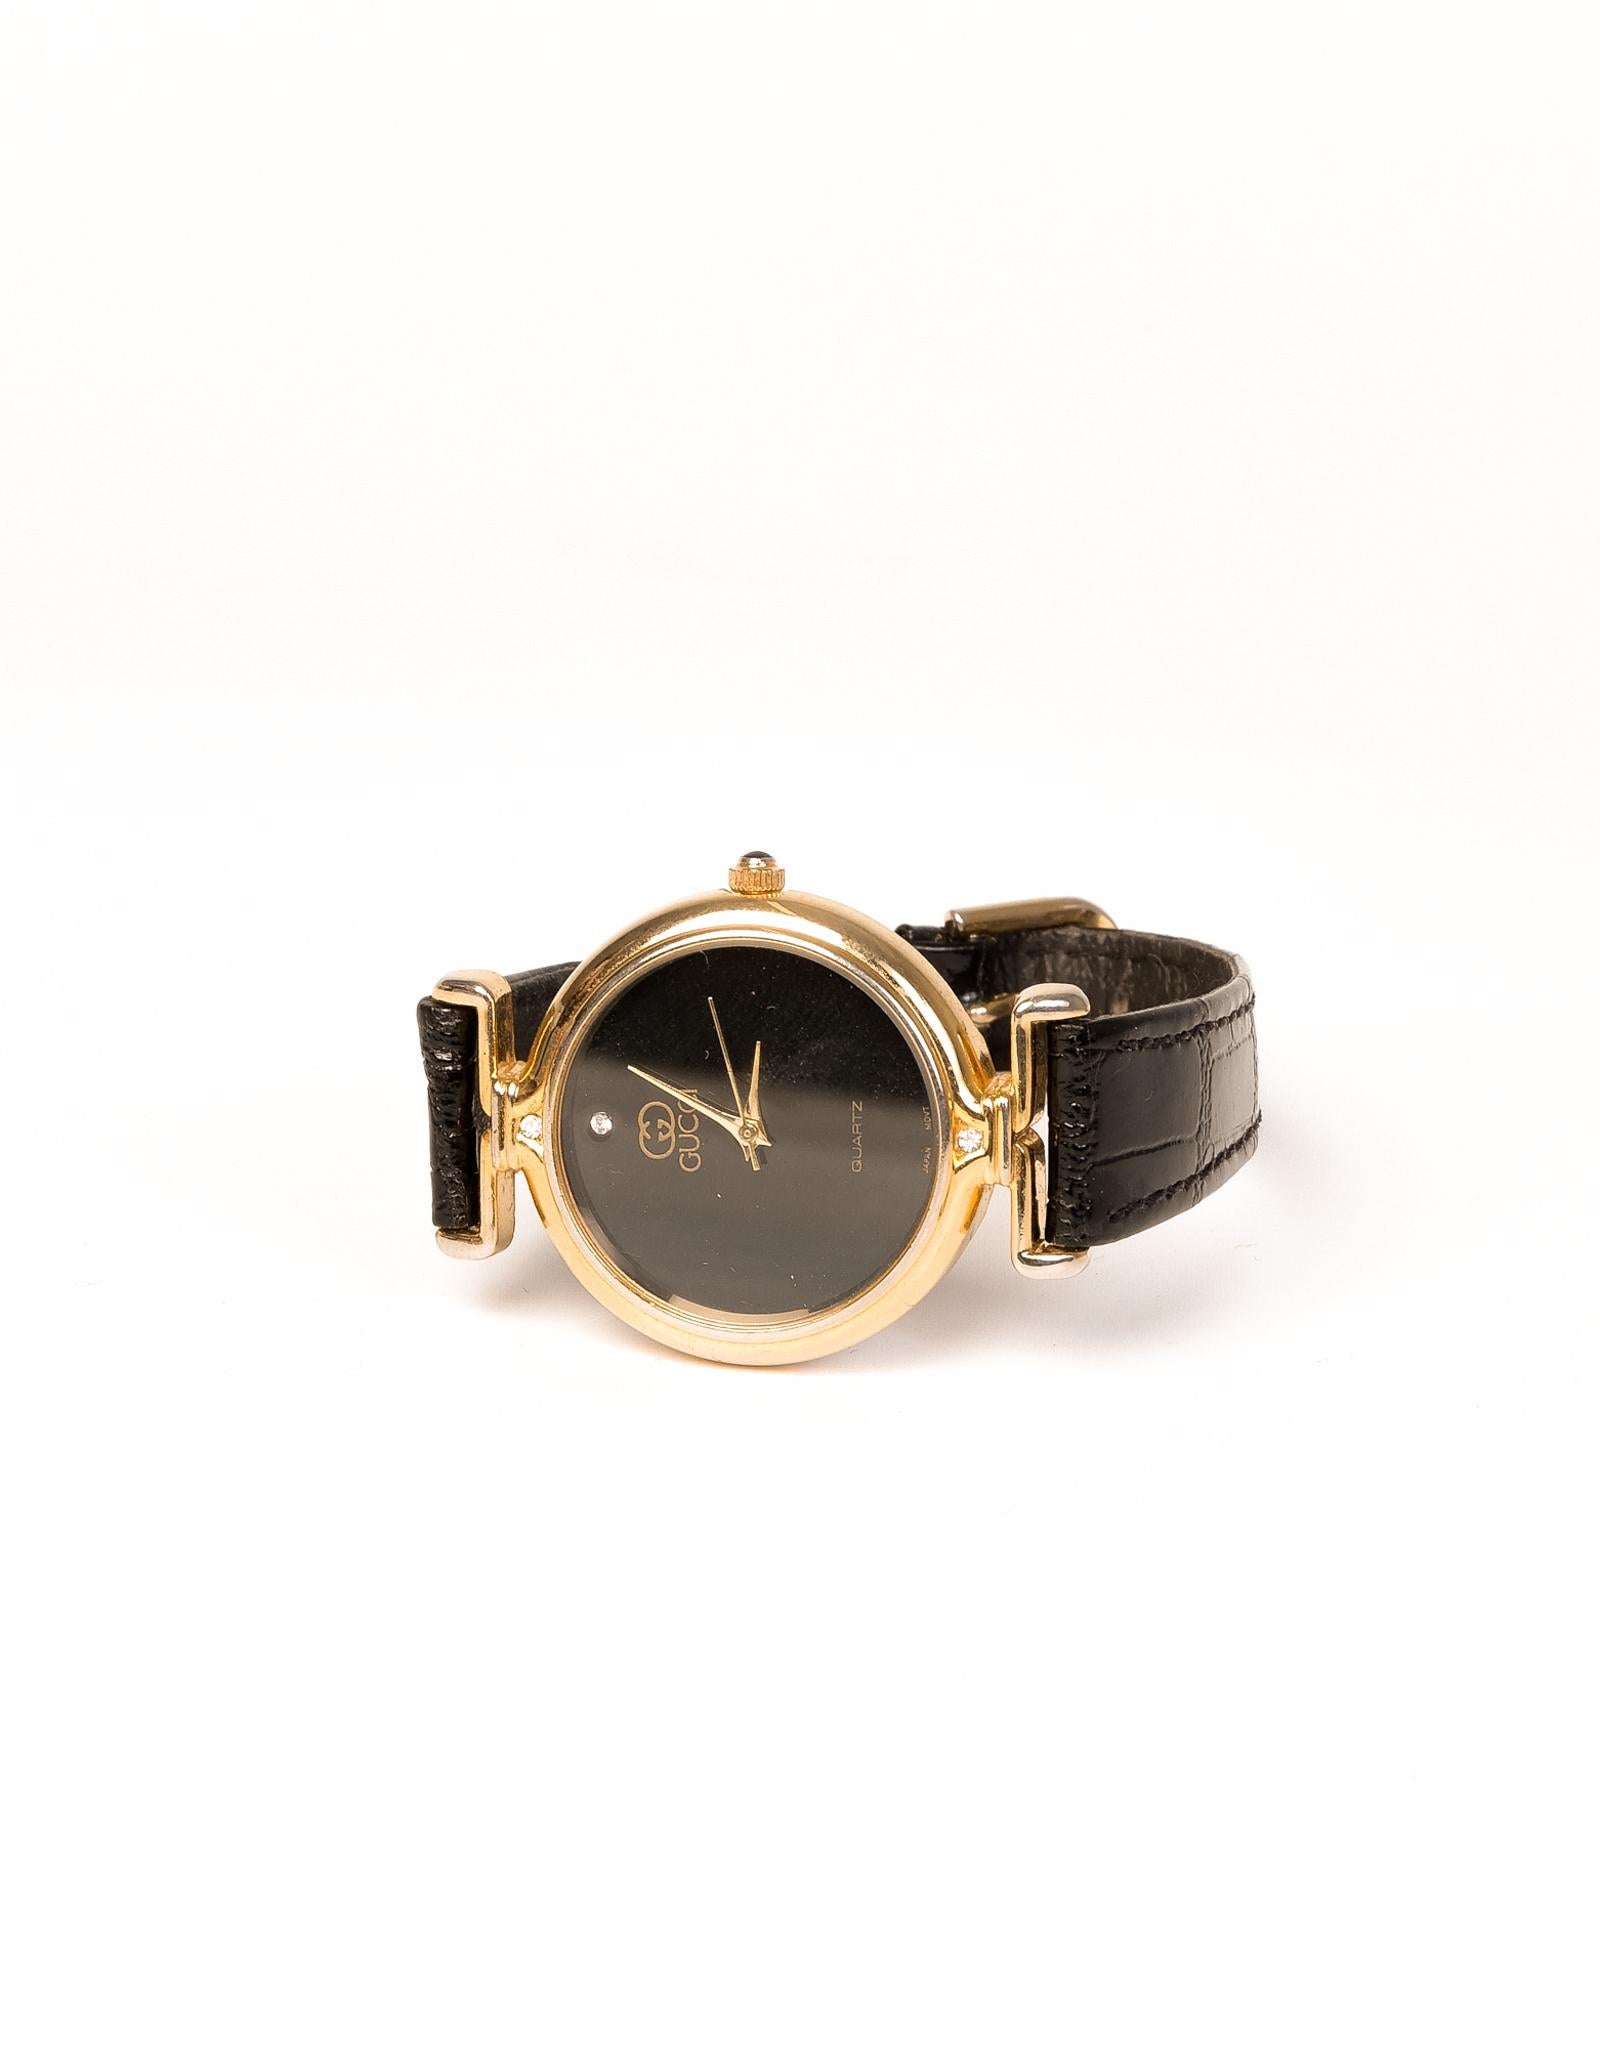 vintage gucci quartz watch